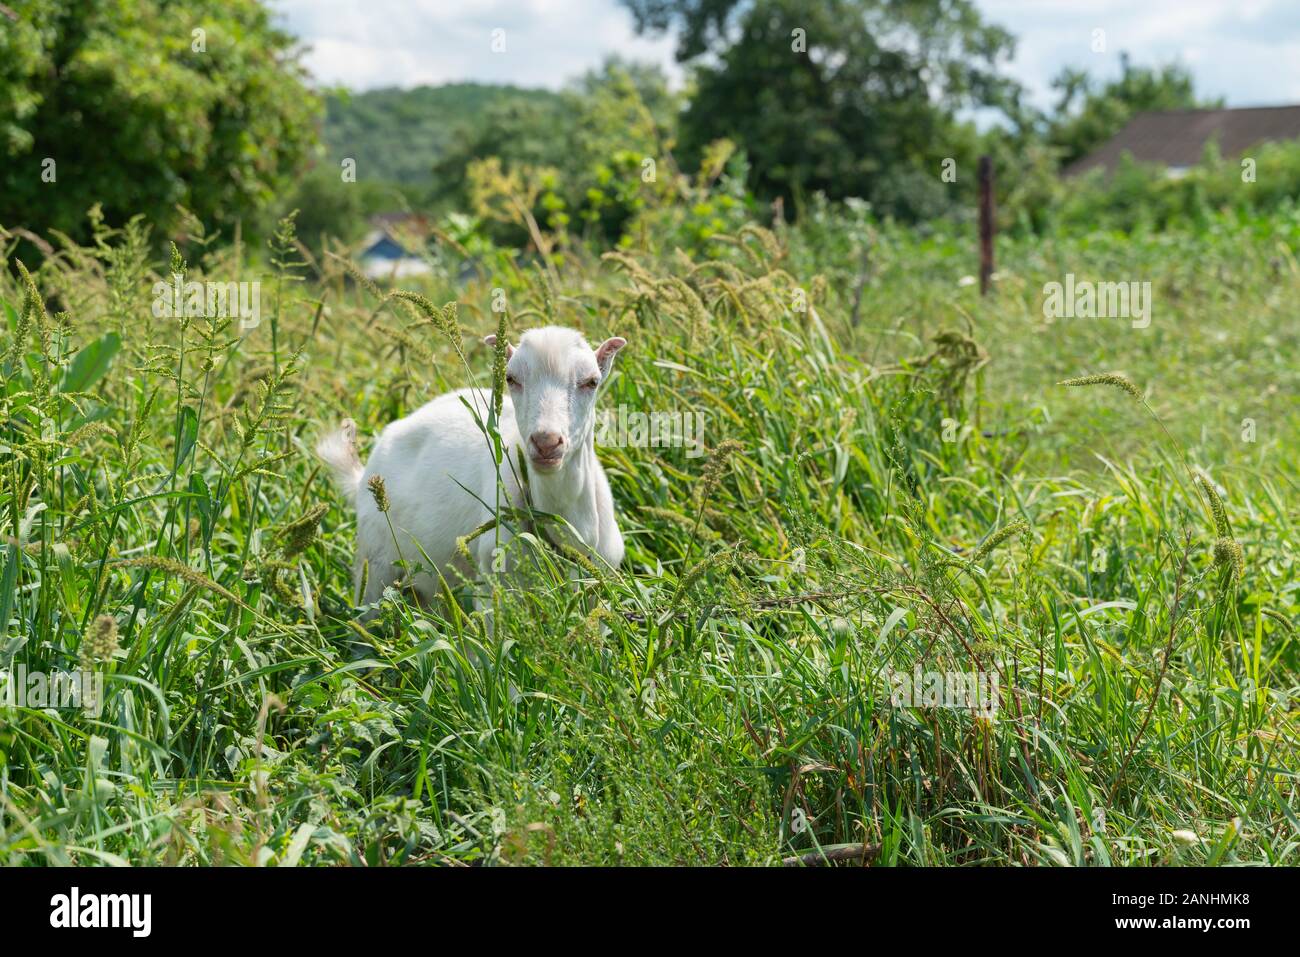 Portrait von weiße Baby Ziegen grasen auf grünem Gras und schönen Sommertag, Landschaft Landschaft, Dächer der Häuser des Dorfes für den Hintergrund. Kid ist ve Stockfoto